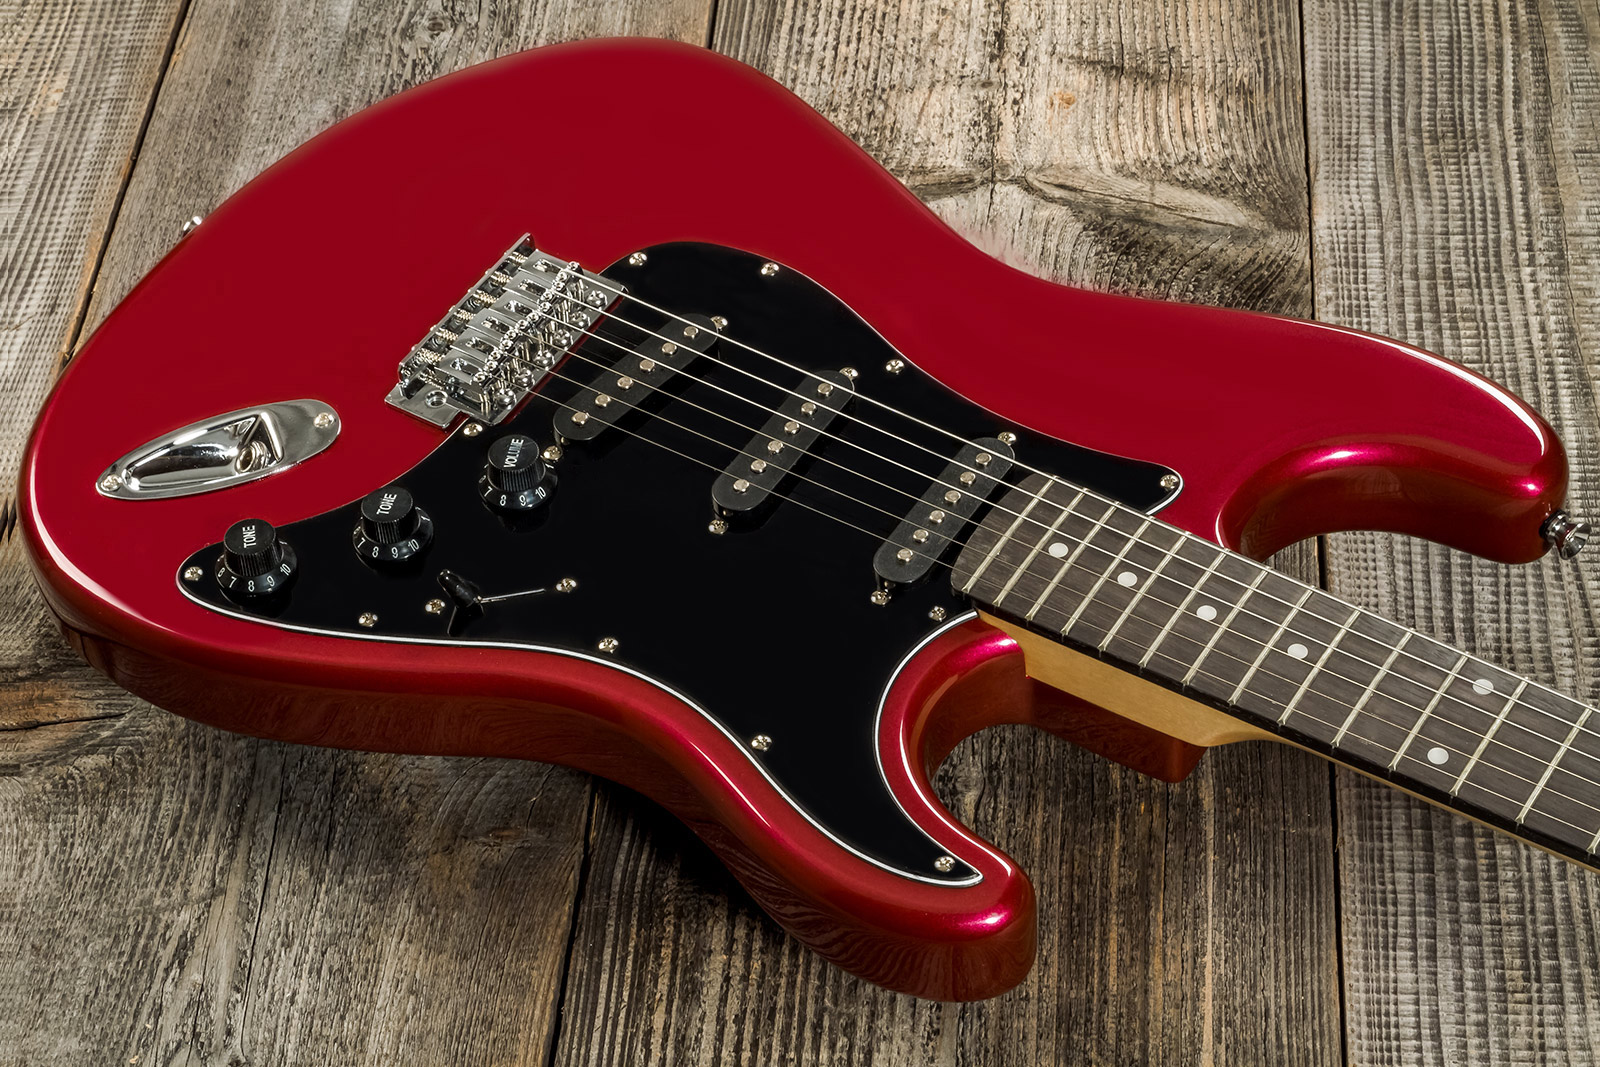 Eastone Str70t 3s Trem Pur - Dark Red - Elektrische gitaar in Str-vorm - Variation 7